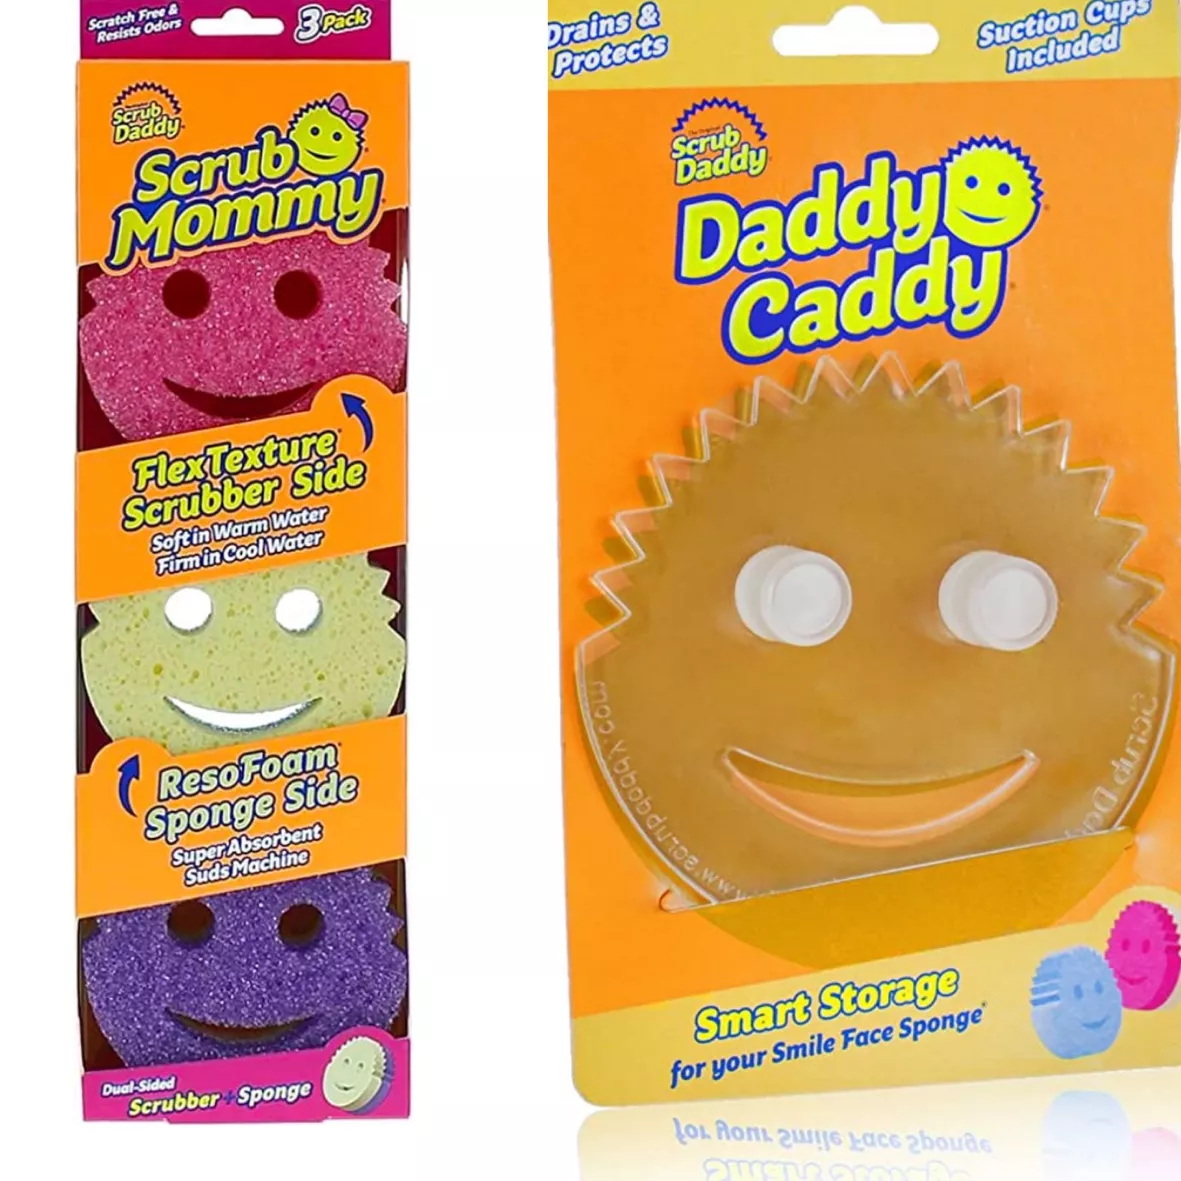 Sponge Caddy Scrub Daddy Holder New